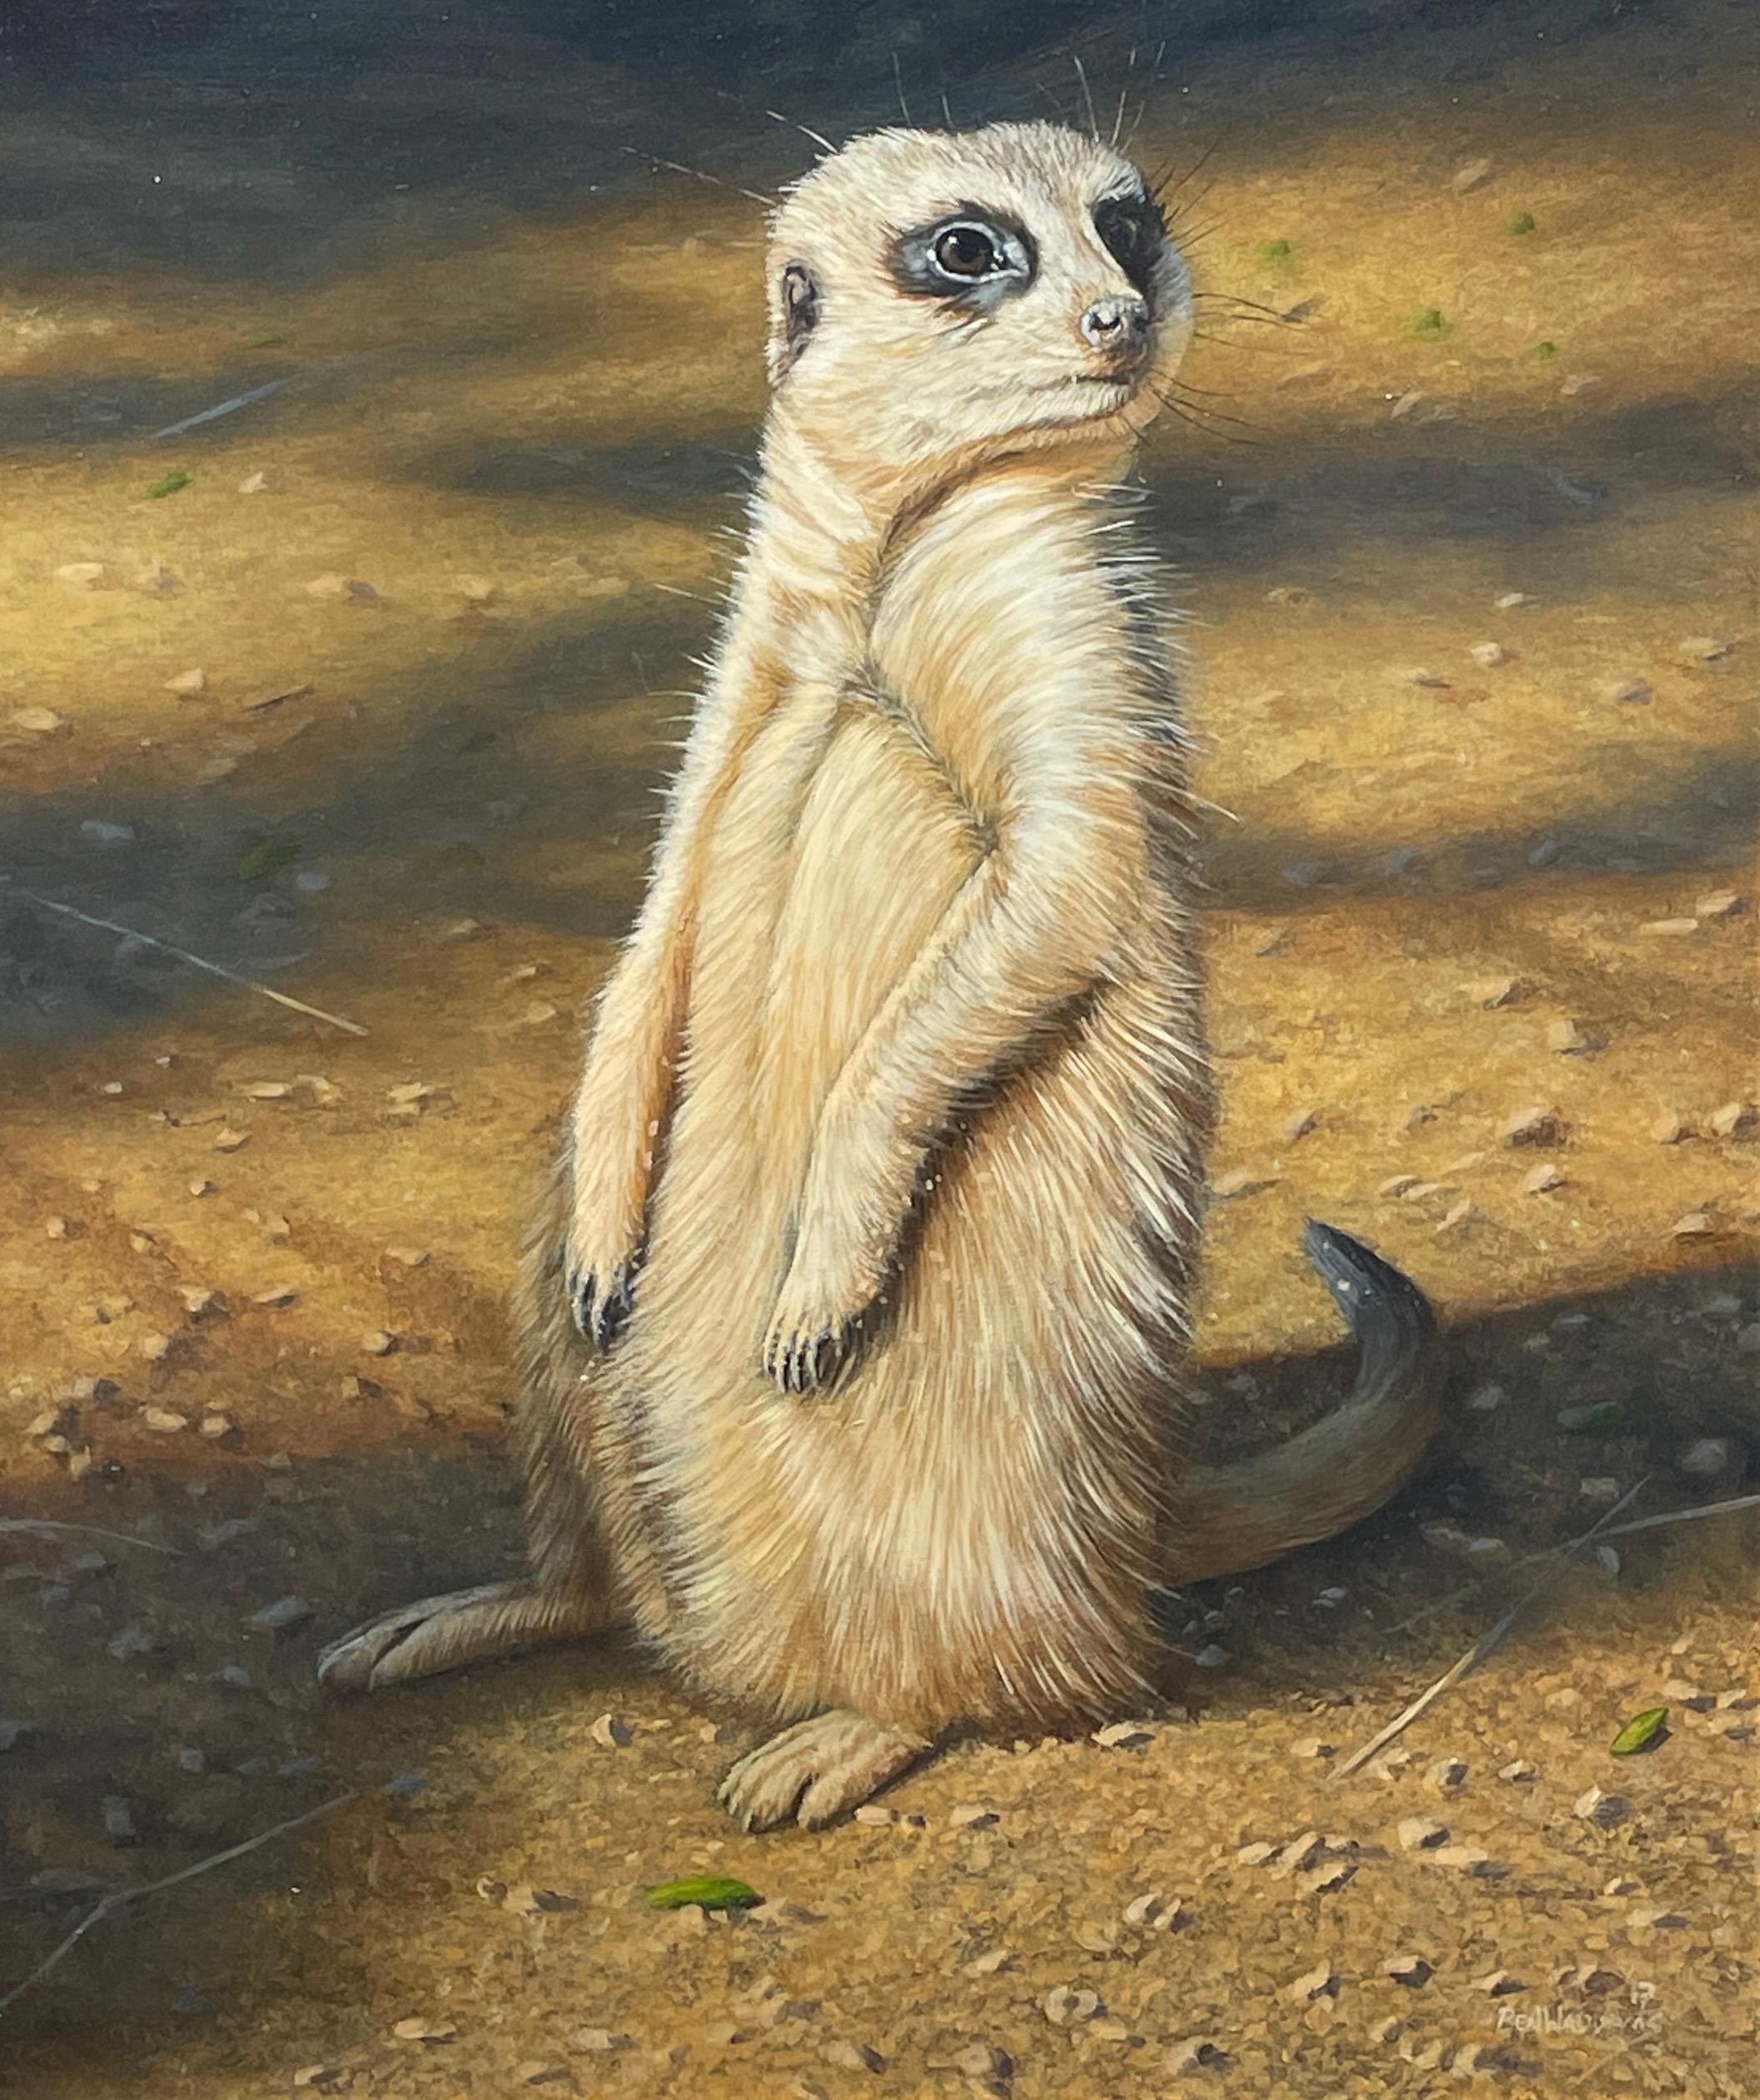 Ben Waddams Animal Painting – The Sun Worshipper" Zeitgenössisches fotorealistisches Gemälde eines Erdmännchens in freier Wildbahn